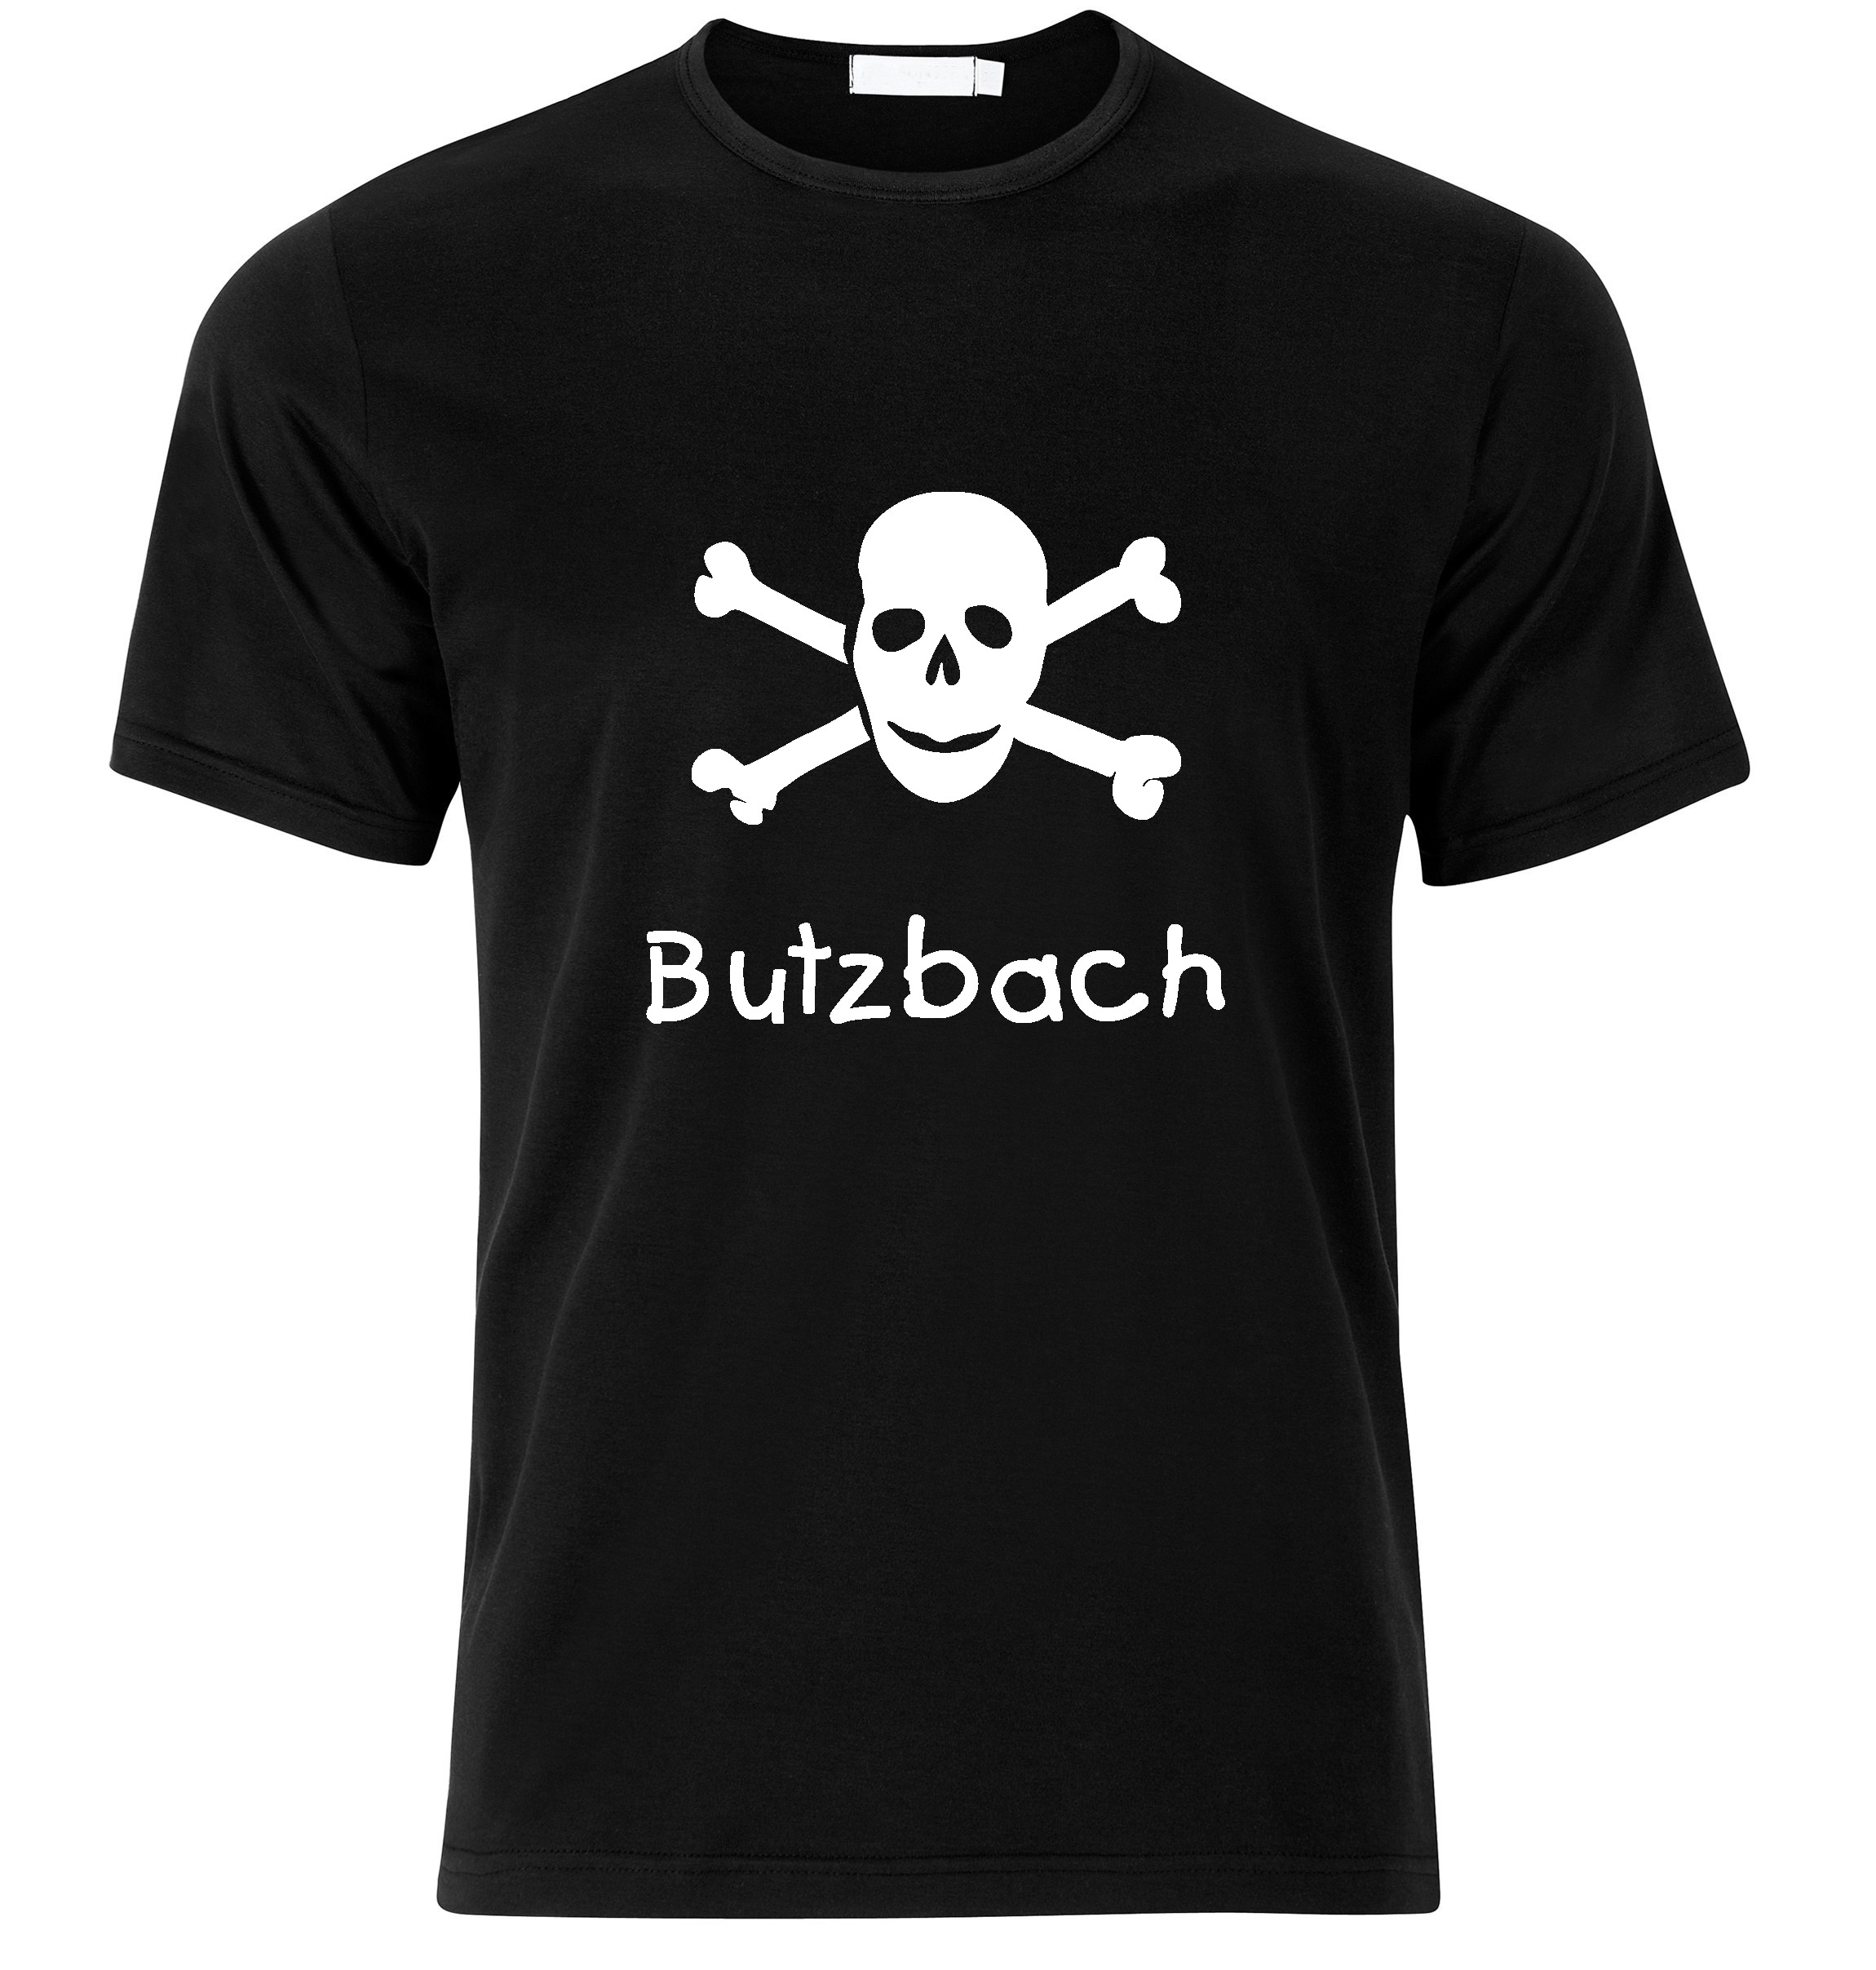 T-Shirt Butzbach Jolly Roger, Totenkopf